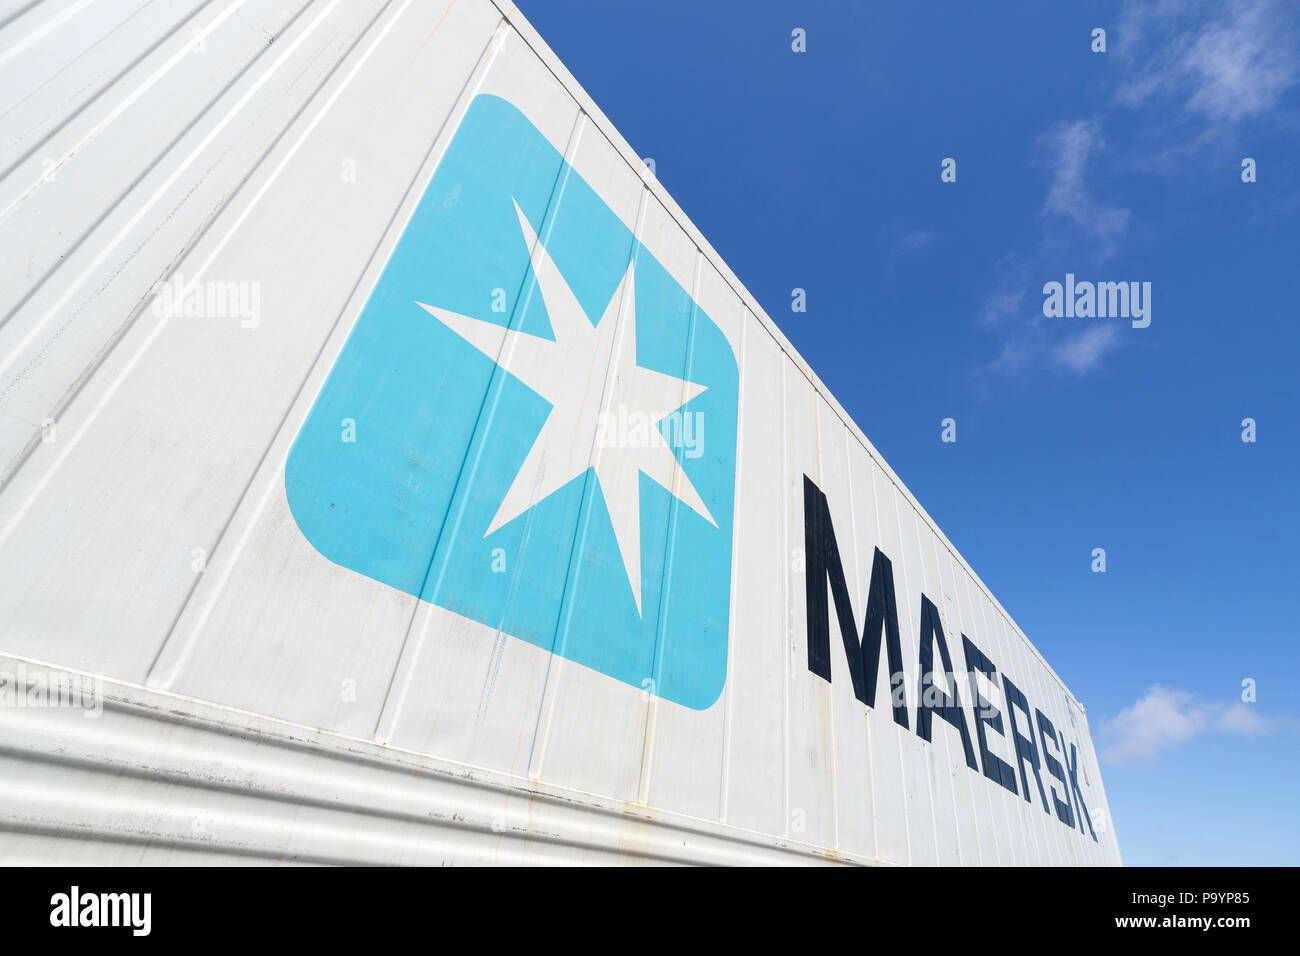 Maersk Intermodal 40 ft Kühlcontainer gegen den blauen Himmel. Maersk ist das größte Containerschiff der Welt. Stockfoto